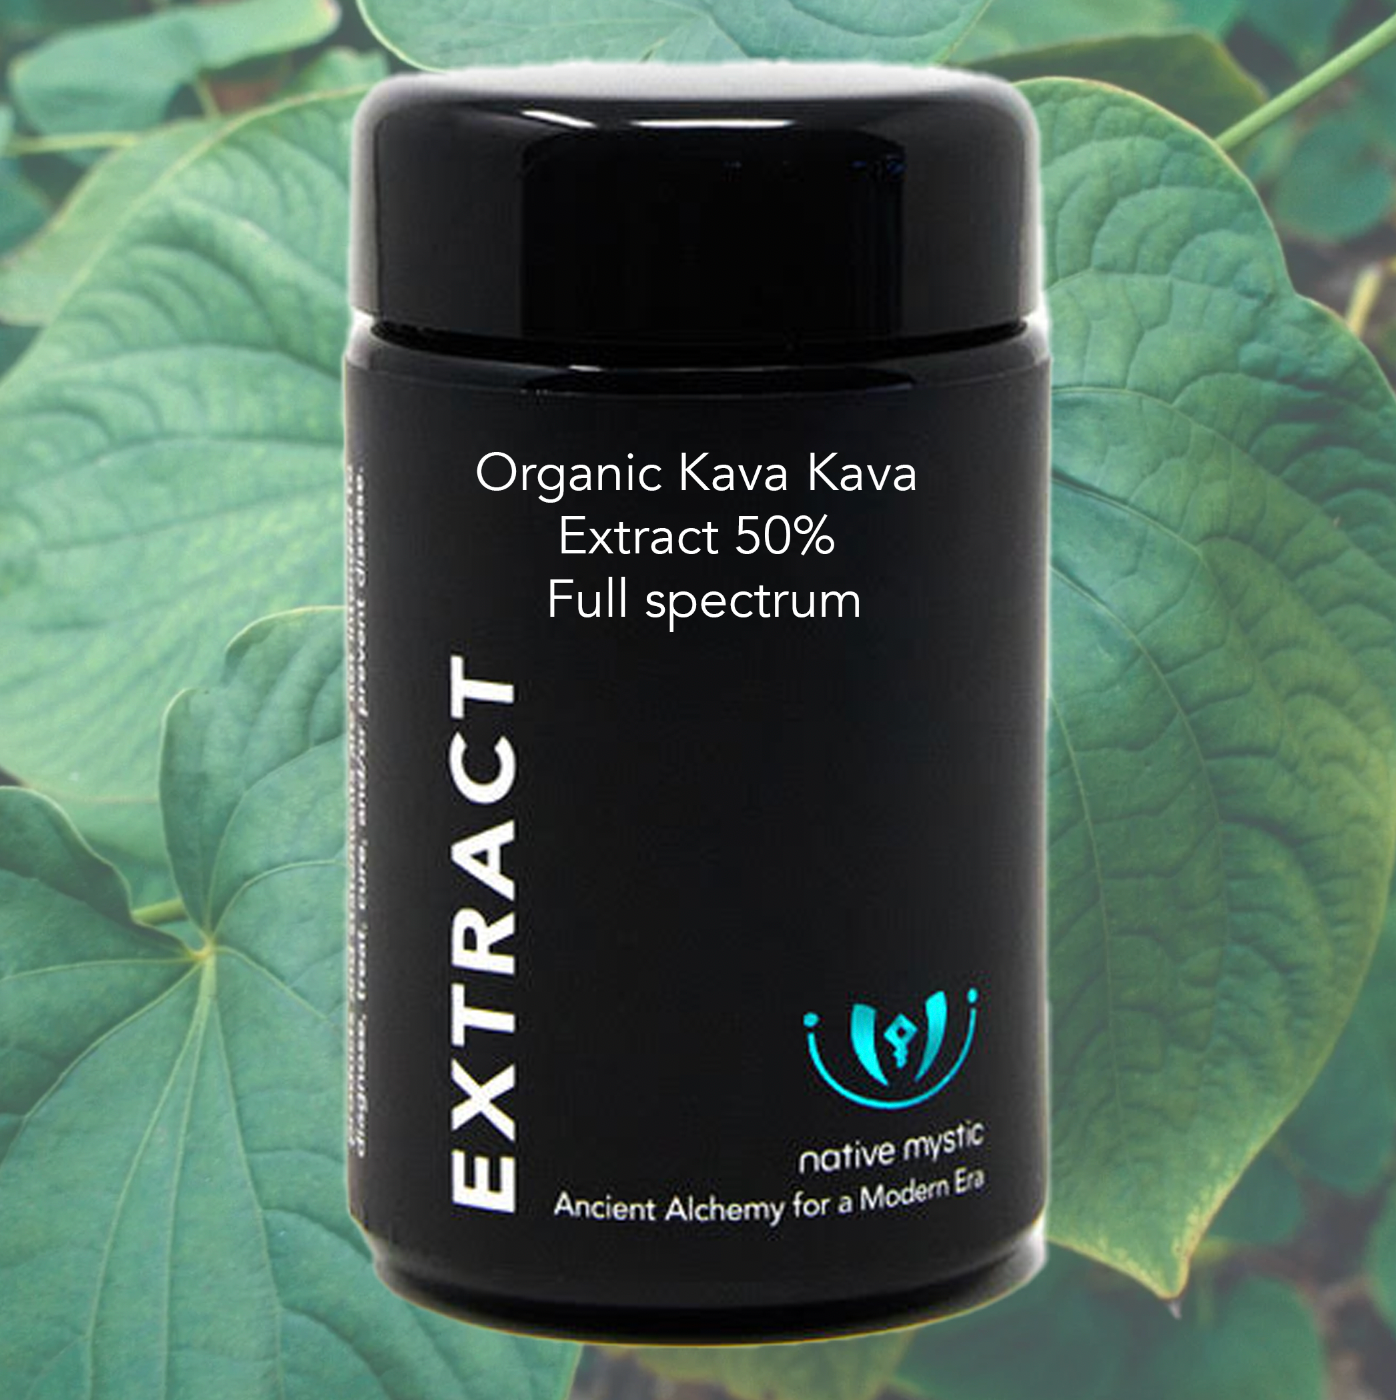 Organic Kava Kava Extract 50% - Full spectrum